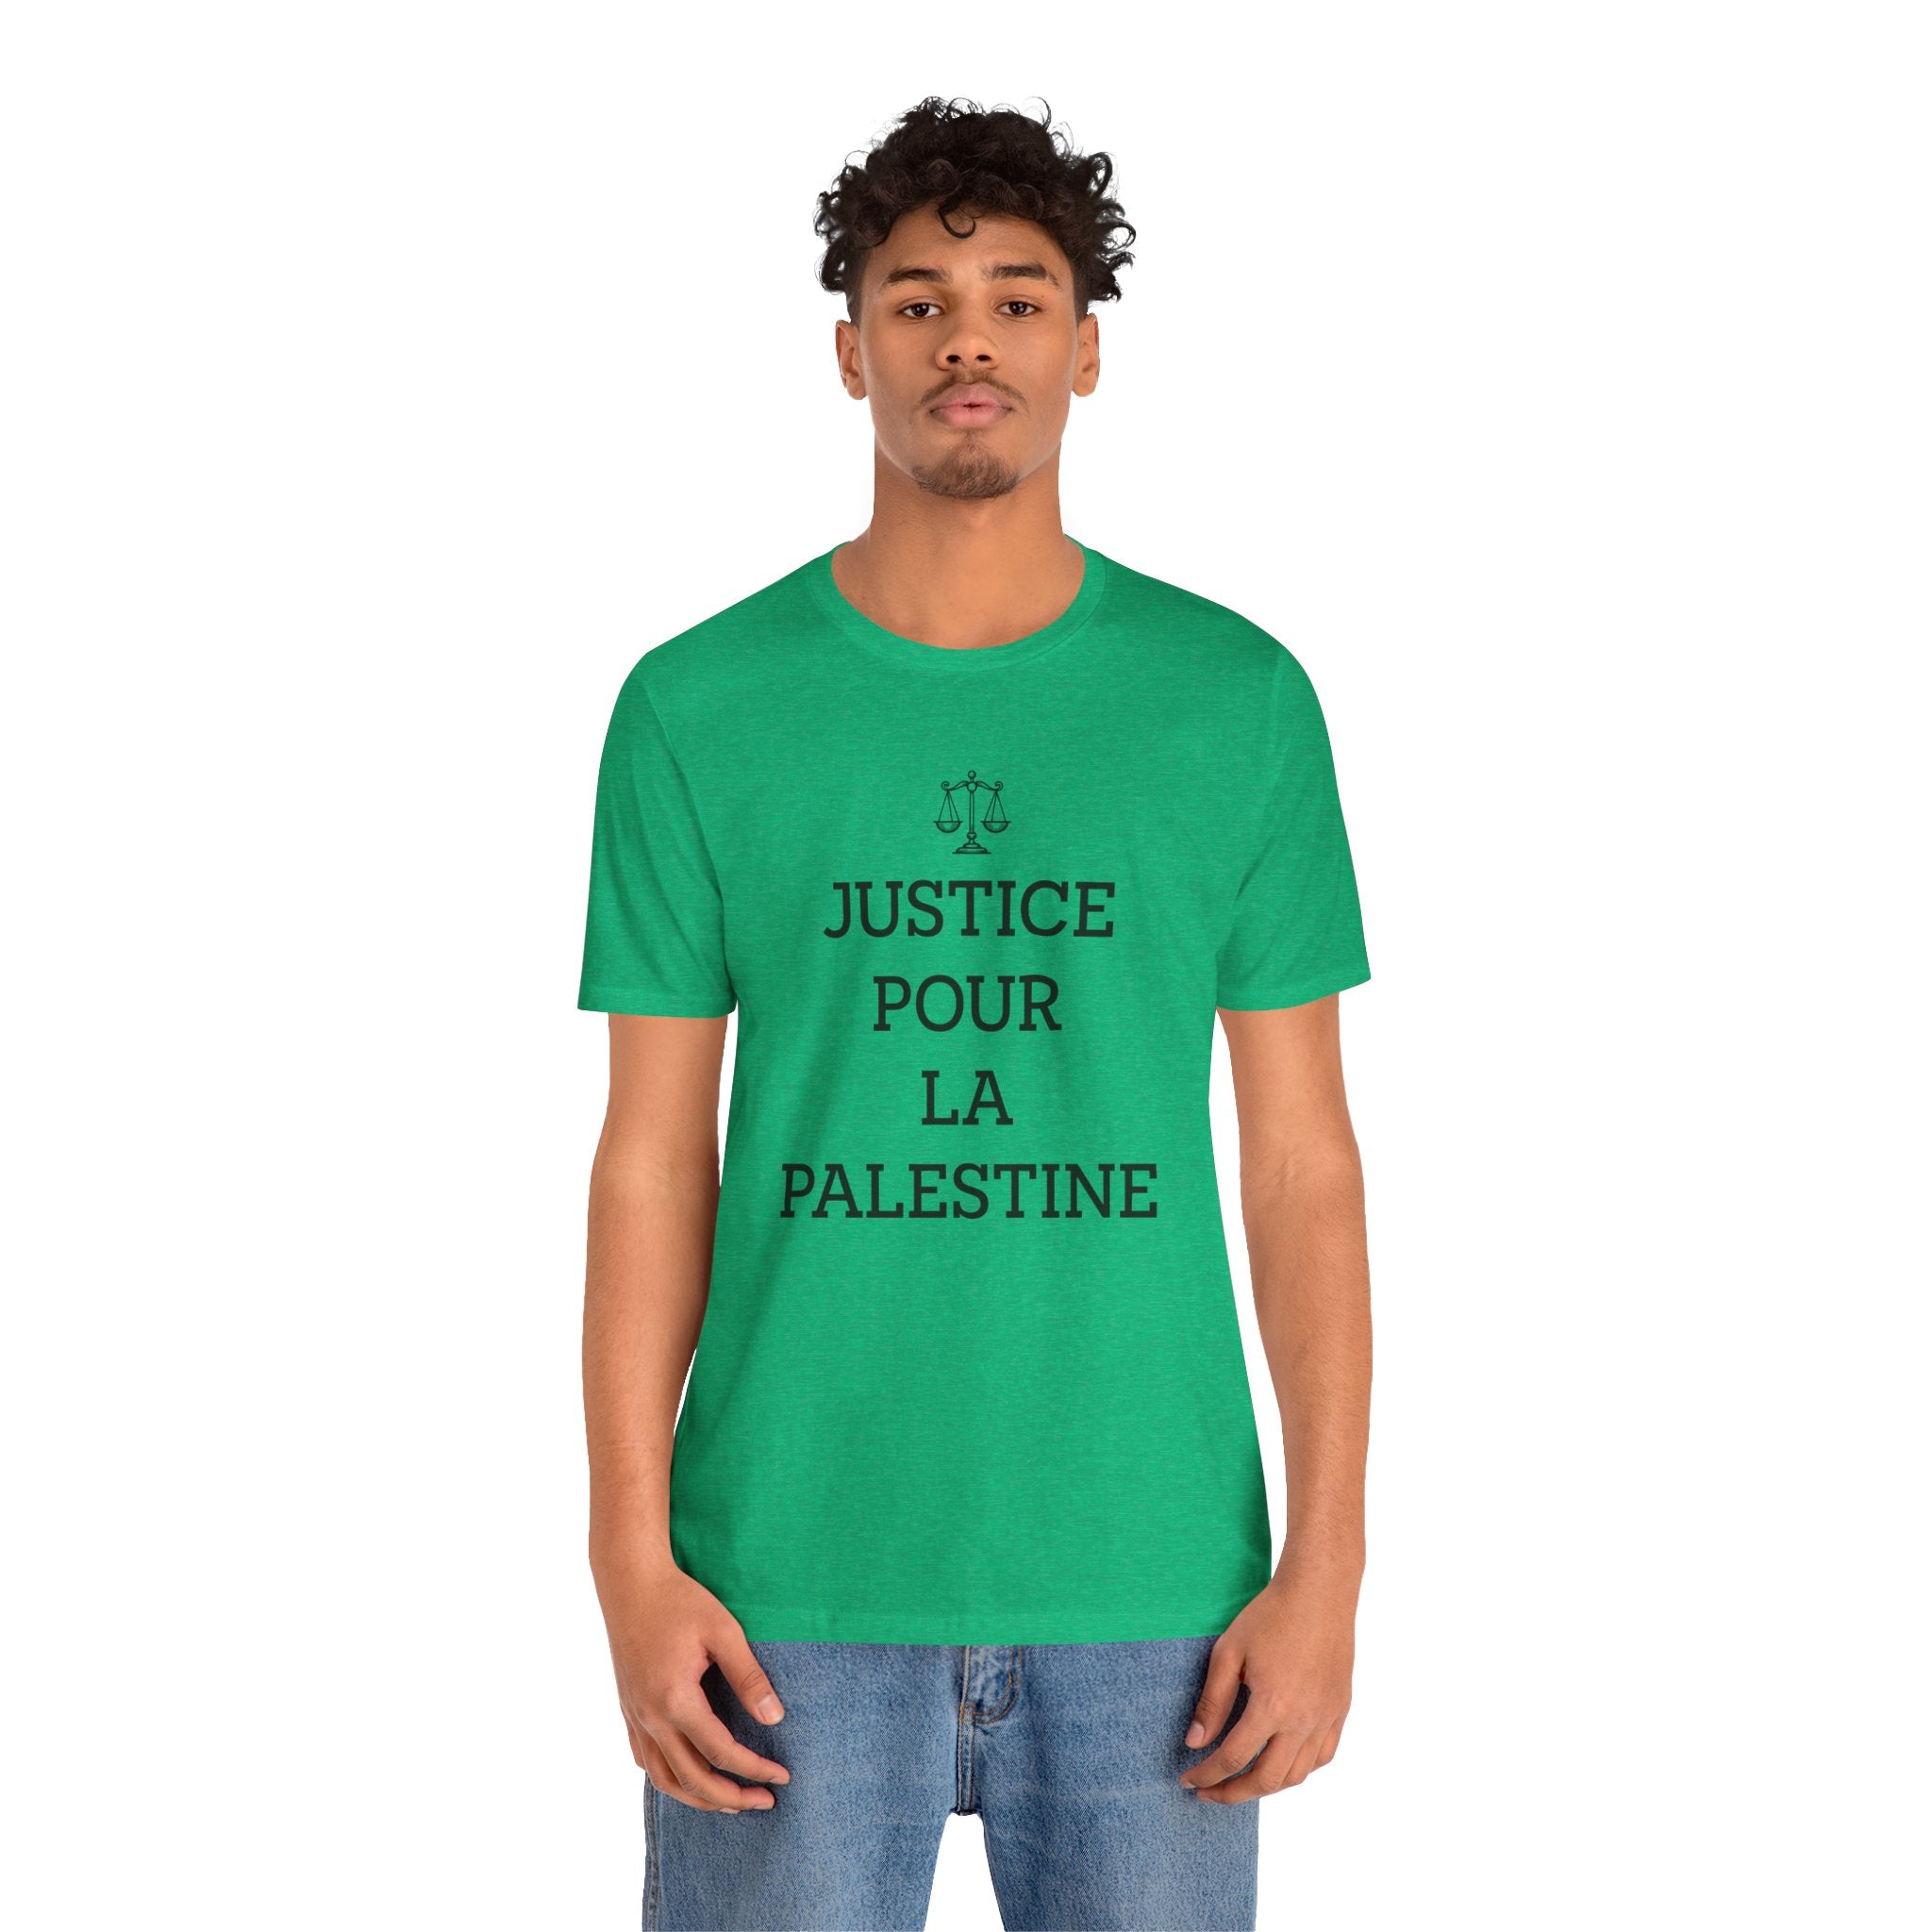 العدالة لفلسطين